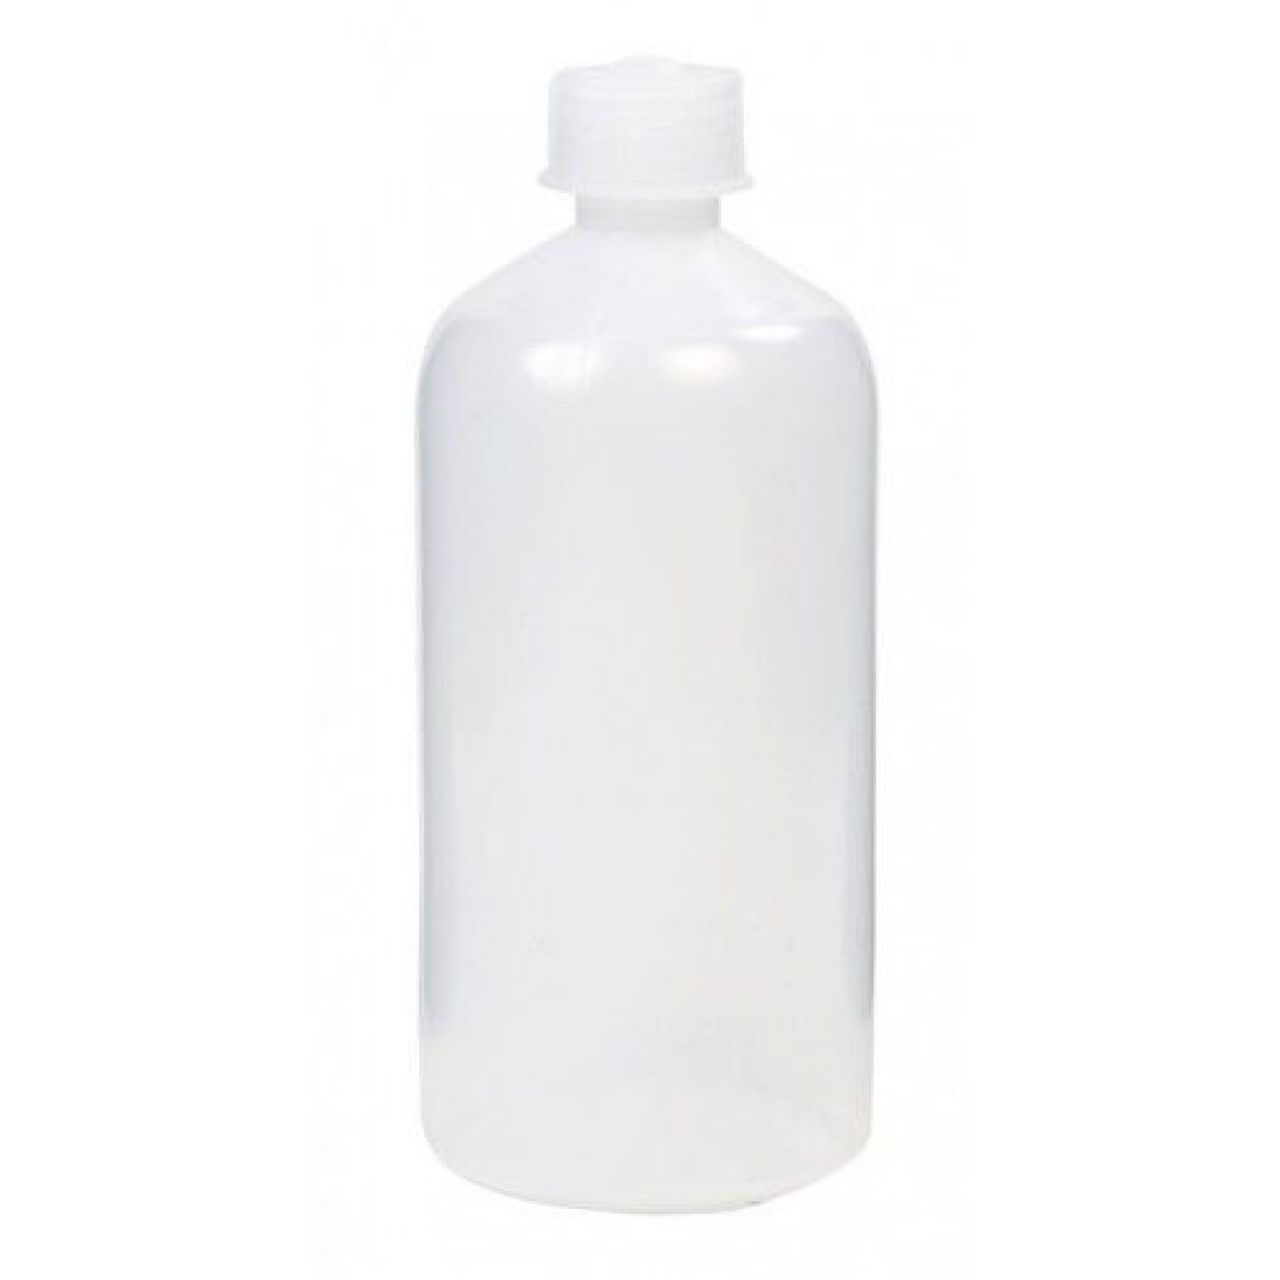 Botella transparente sin pico 250 ml